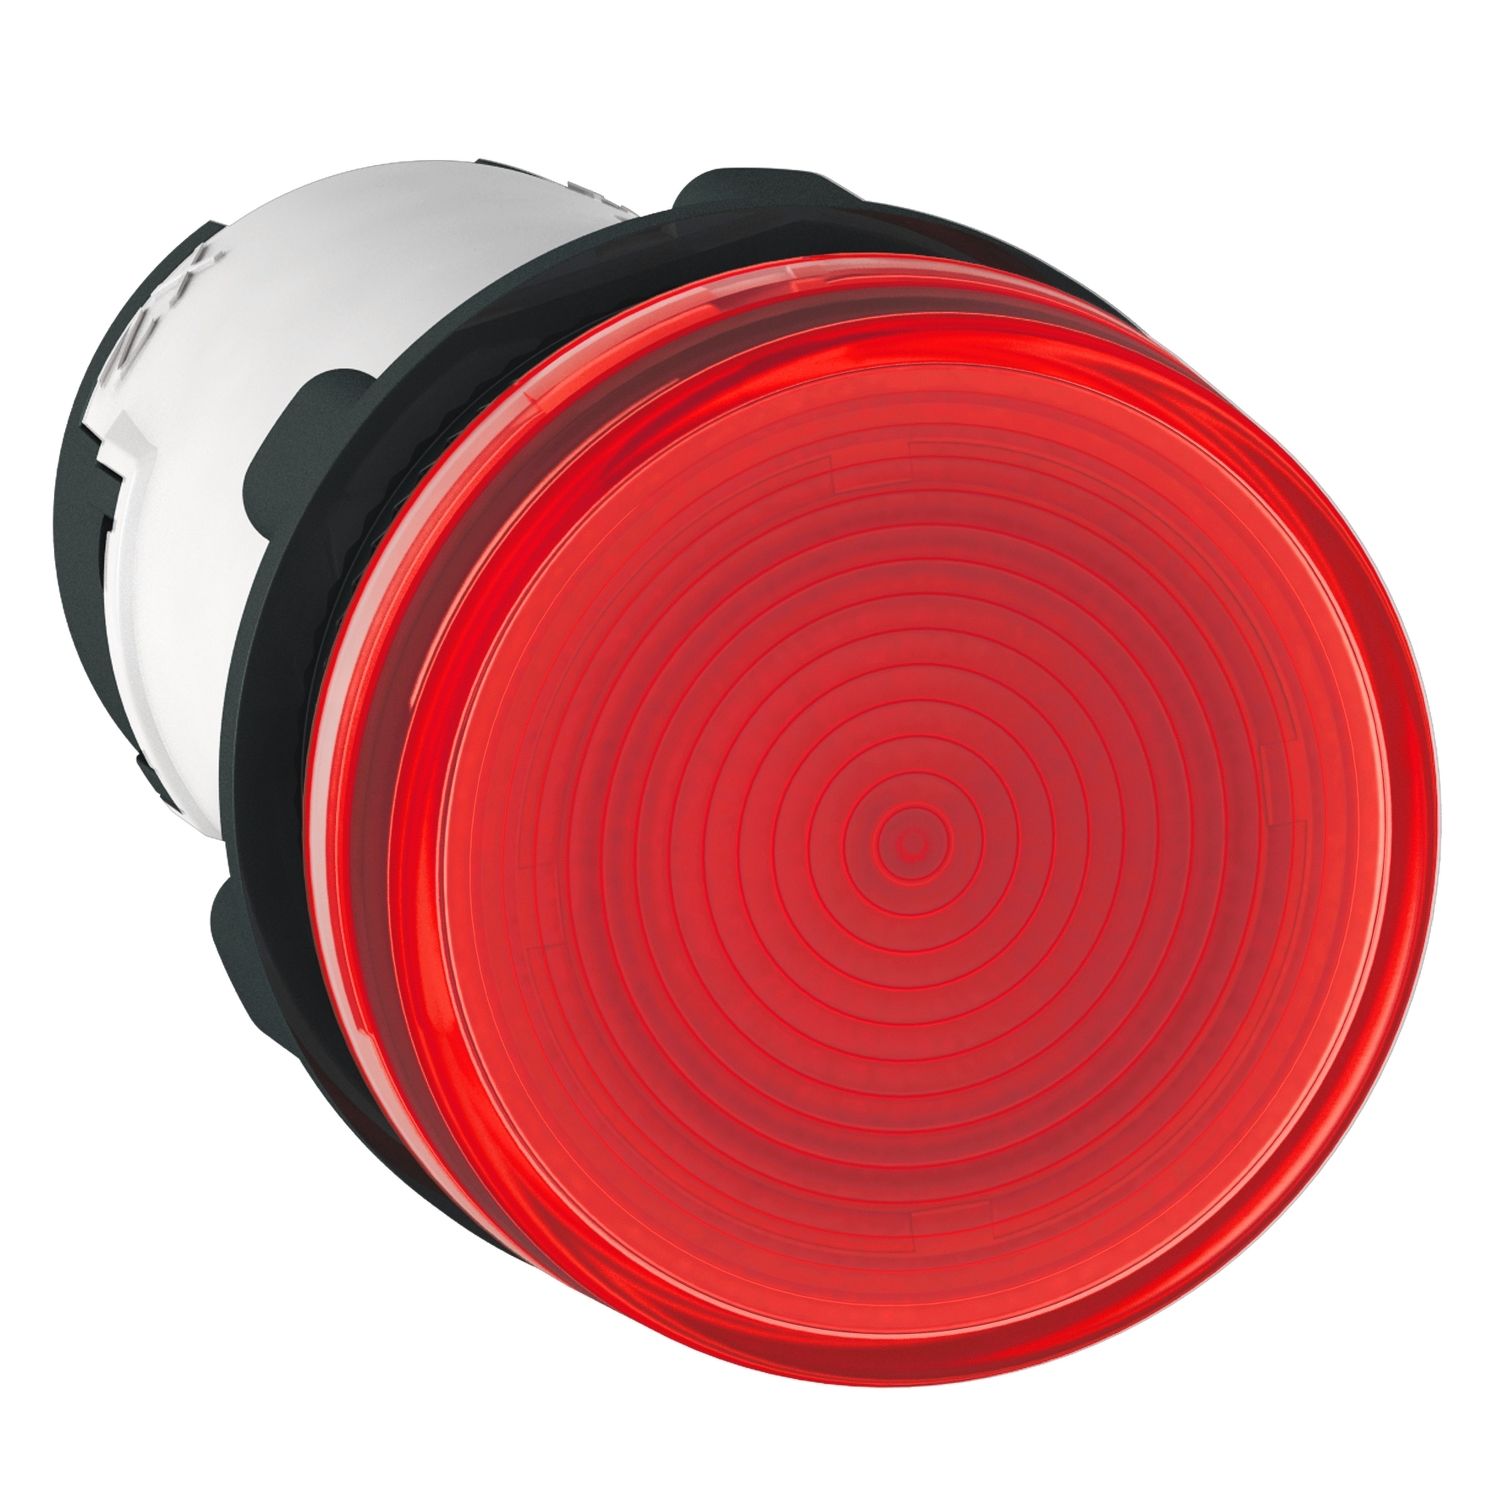 XB7EV64P Monolithic pilot light, Harmony XB7, plastic, red, 22mm, plain lens for BA9s bulb, lt 250V